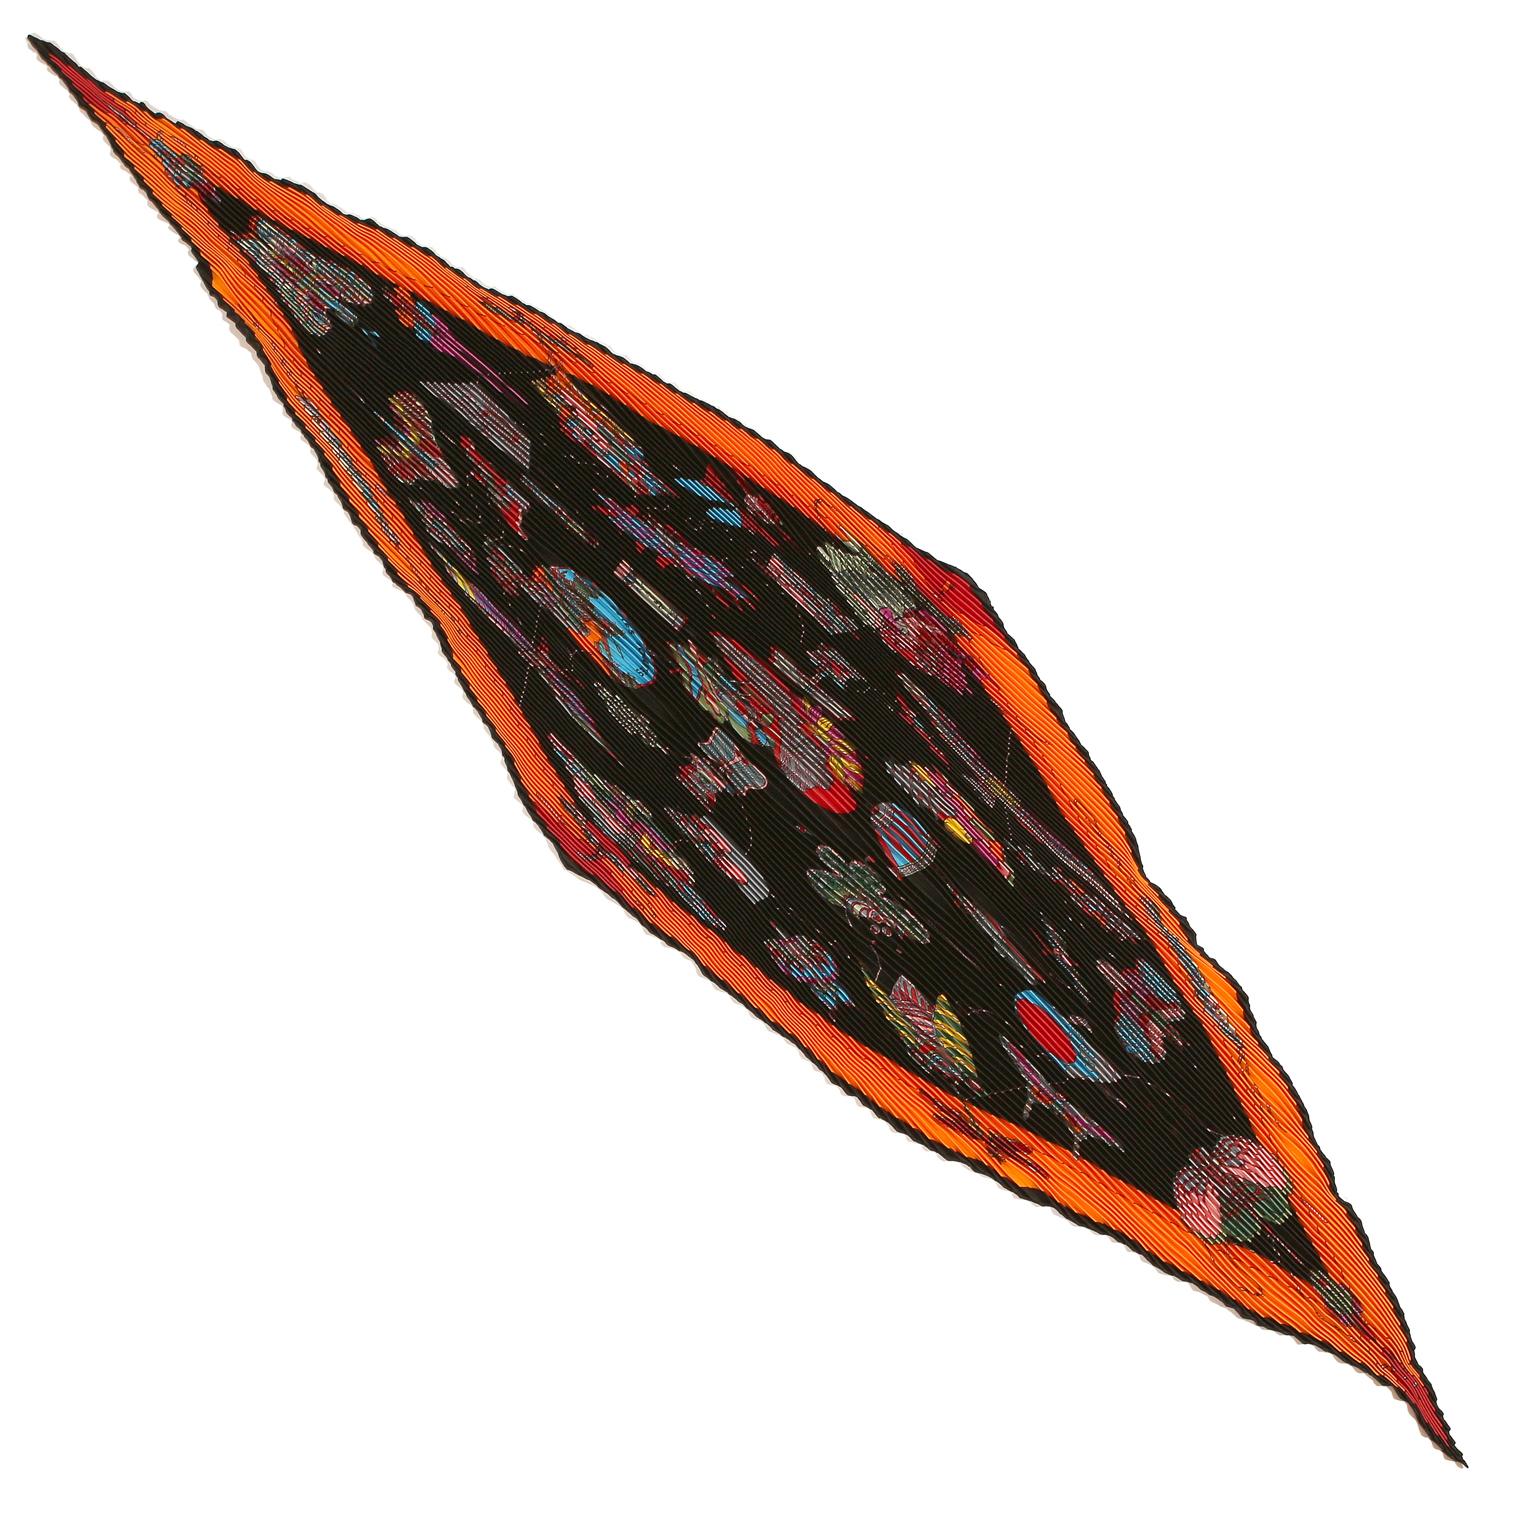 Hermès Multicolor Soies Volantes Plisse Scarf- NEW with box. 
 une bordure orange sur un fond noir permet de faire apparaître un spectaculaire motif multicolore.  Cerfs-volants et lanternes d'inspiration asiatique en forme d'insectes:: d'oiseaux et